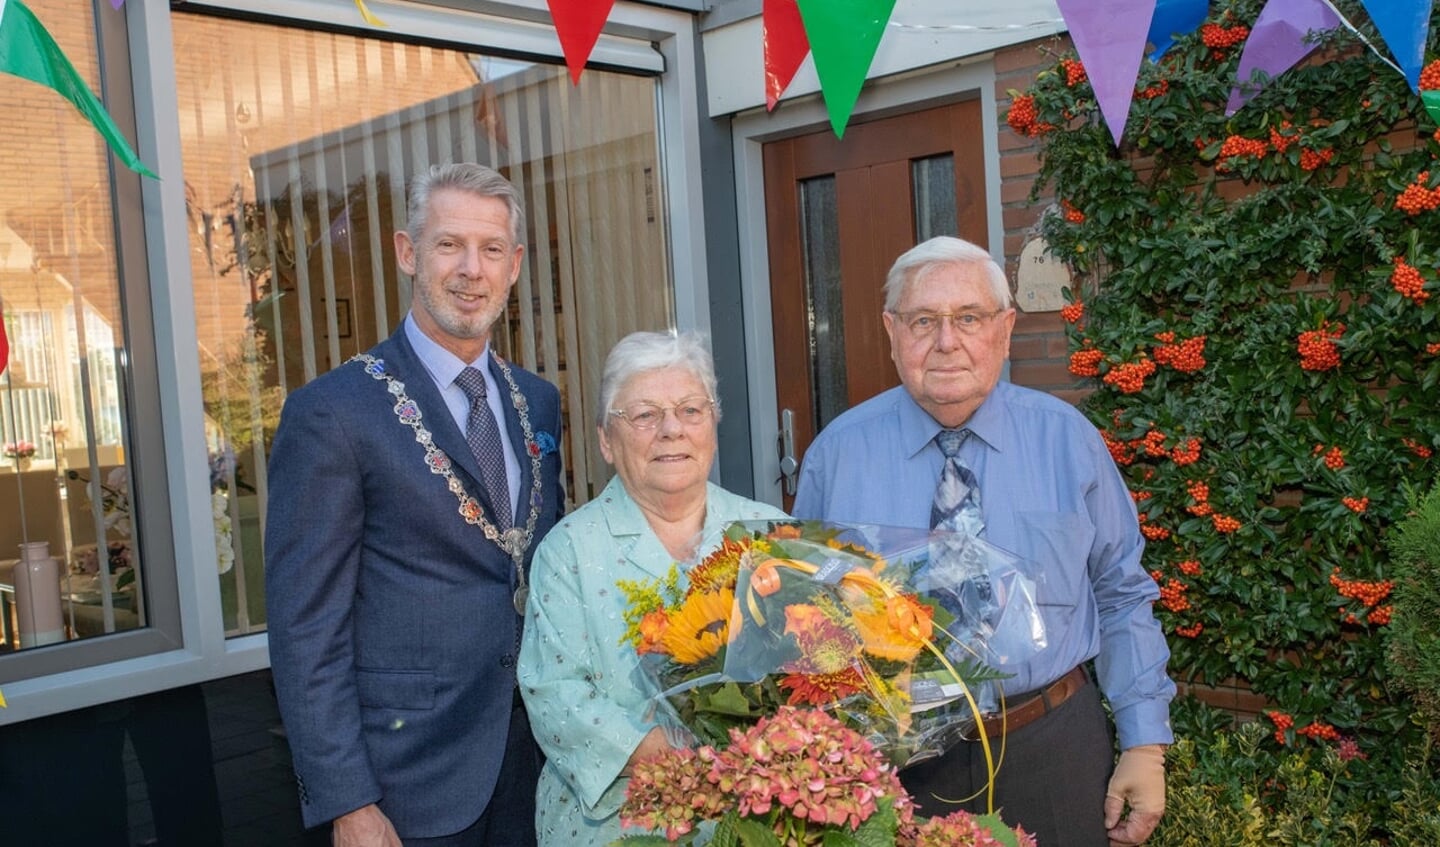 Hoes als burgemeester van Haarlemmermeer op bezoek bij het echtpaar Dijkgraaf-Dekker.